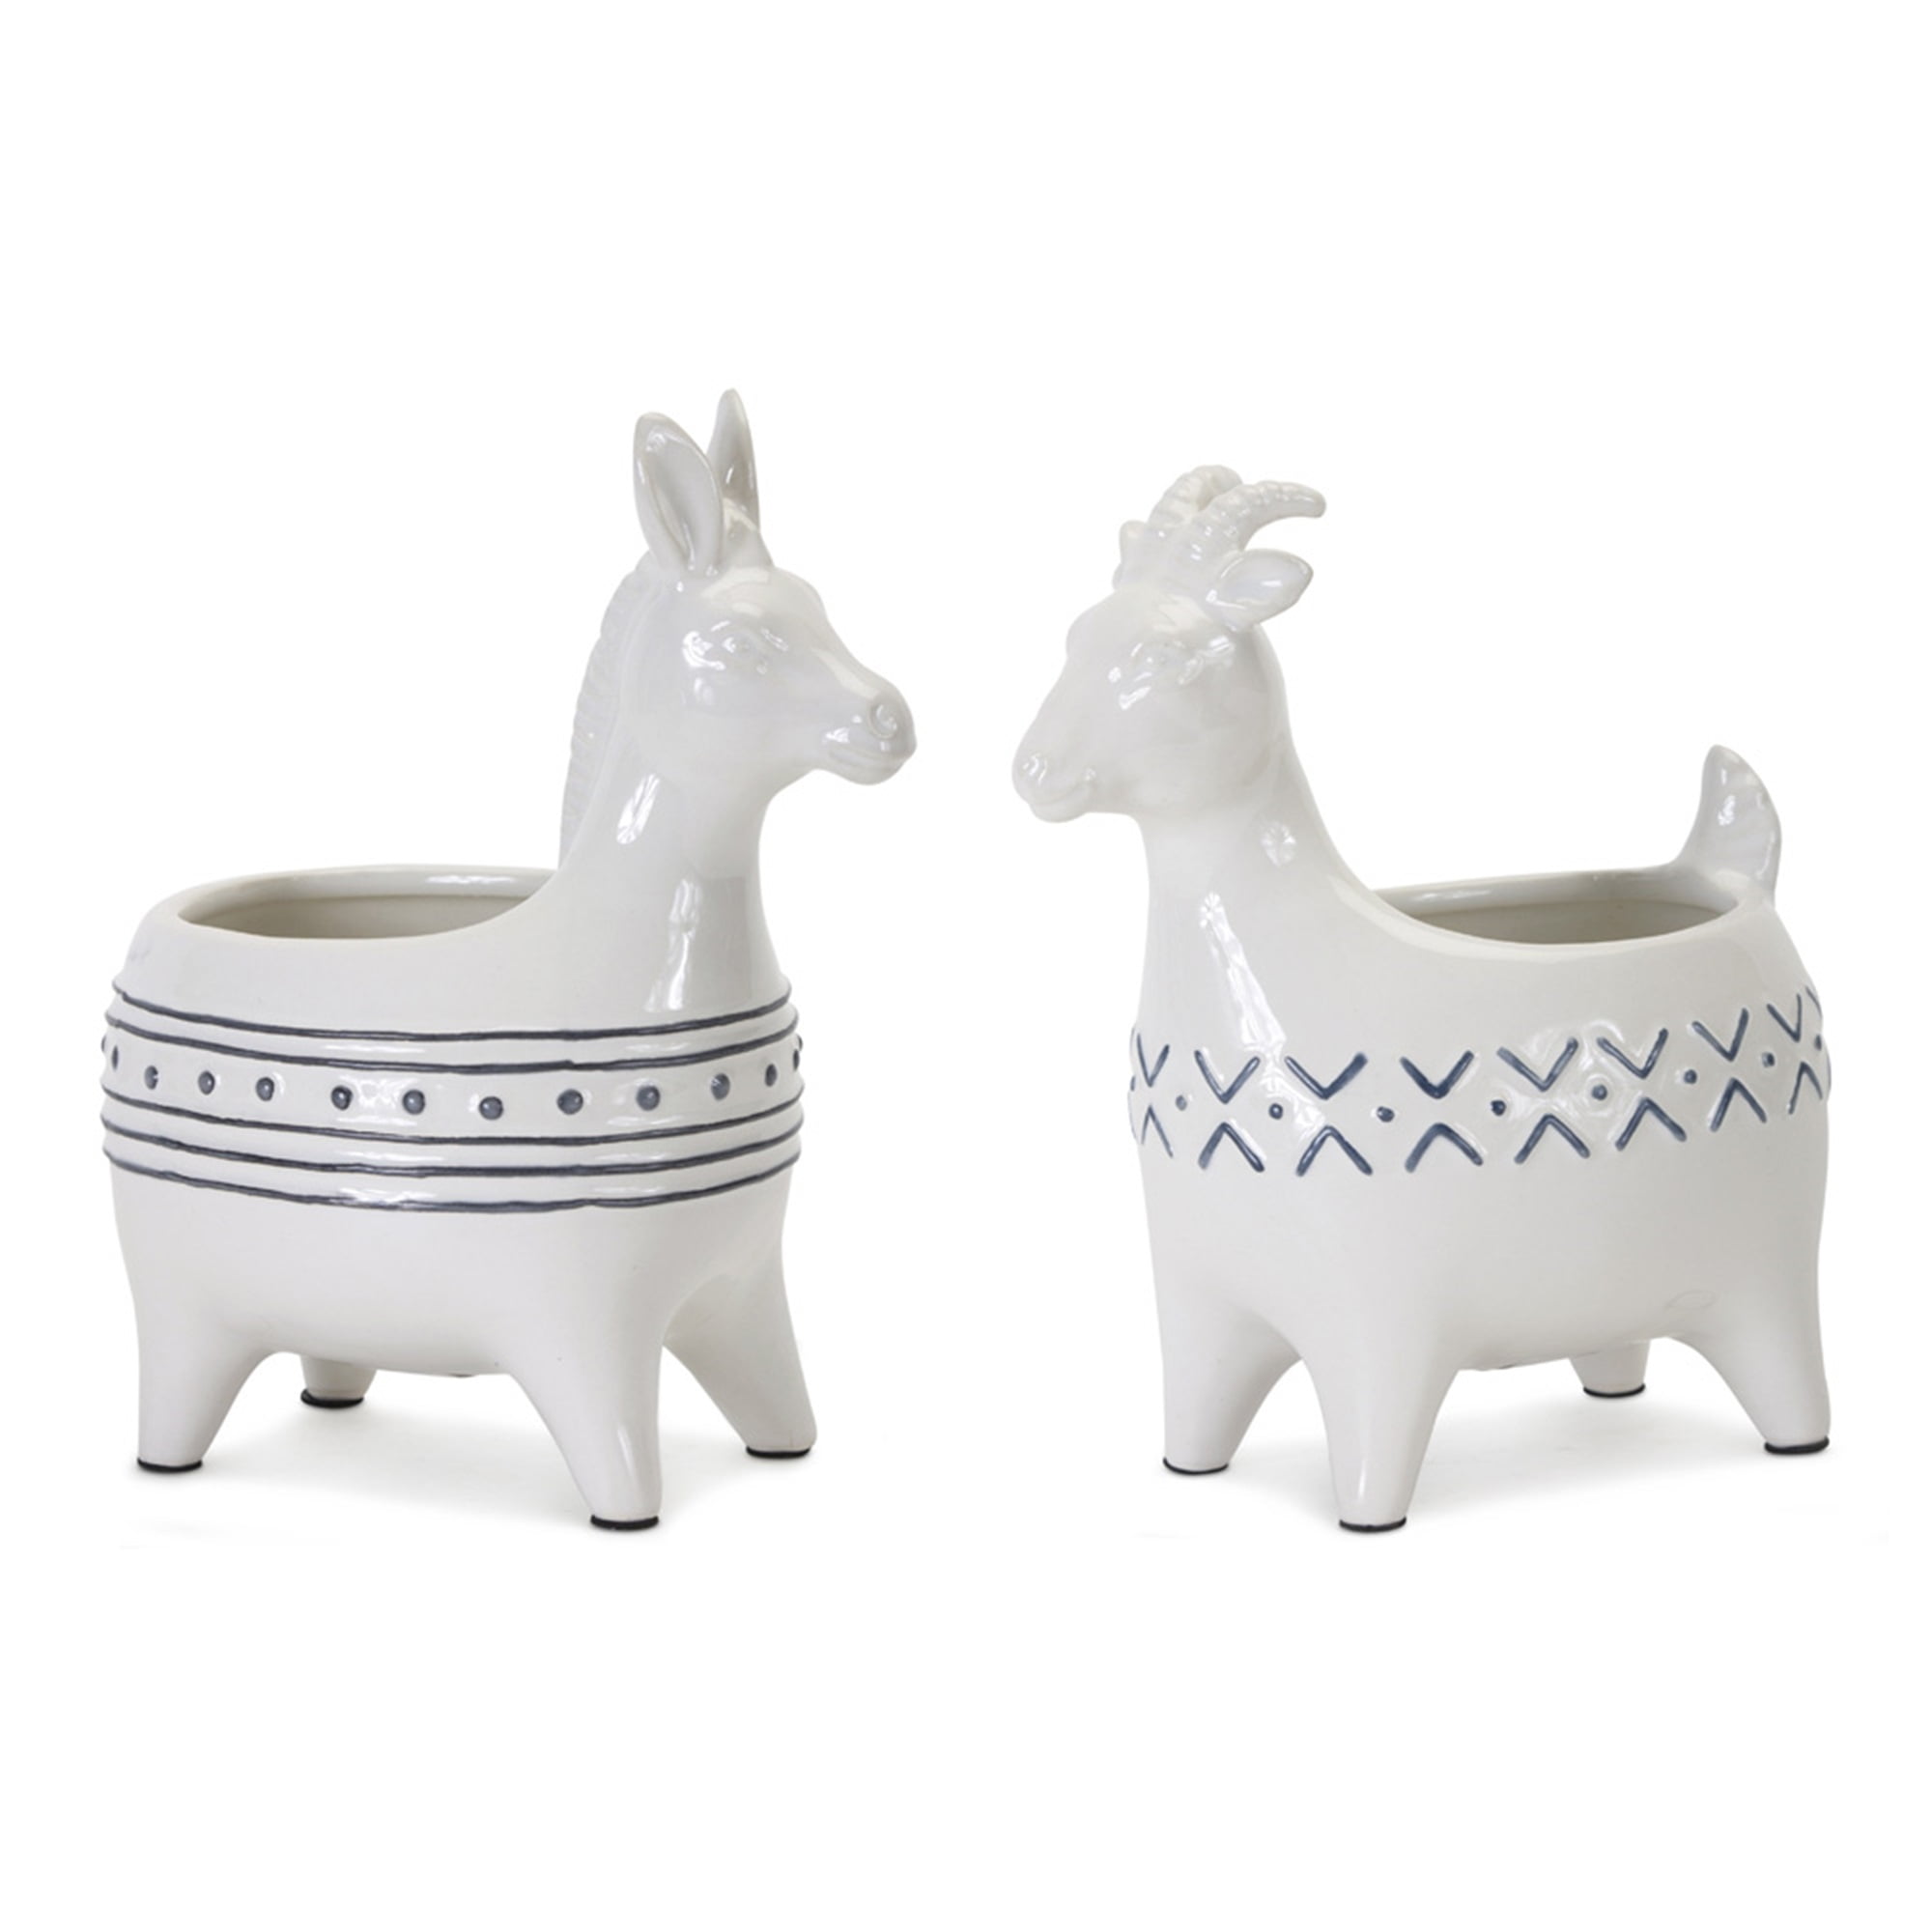 Goat/Donkey Planter (Set of 2) 4" x 7.75"H Ceramic